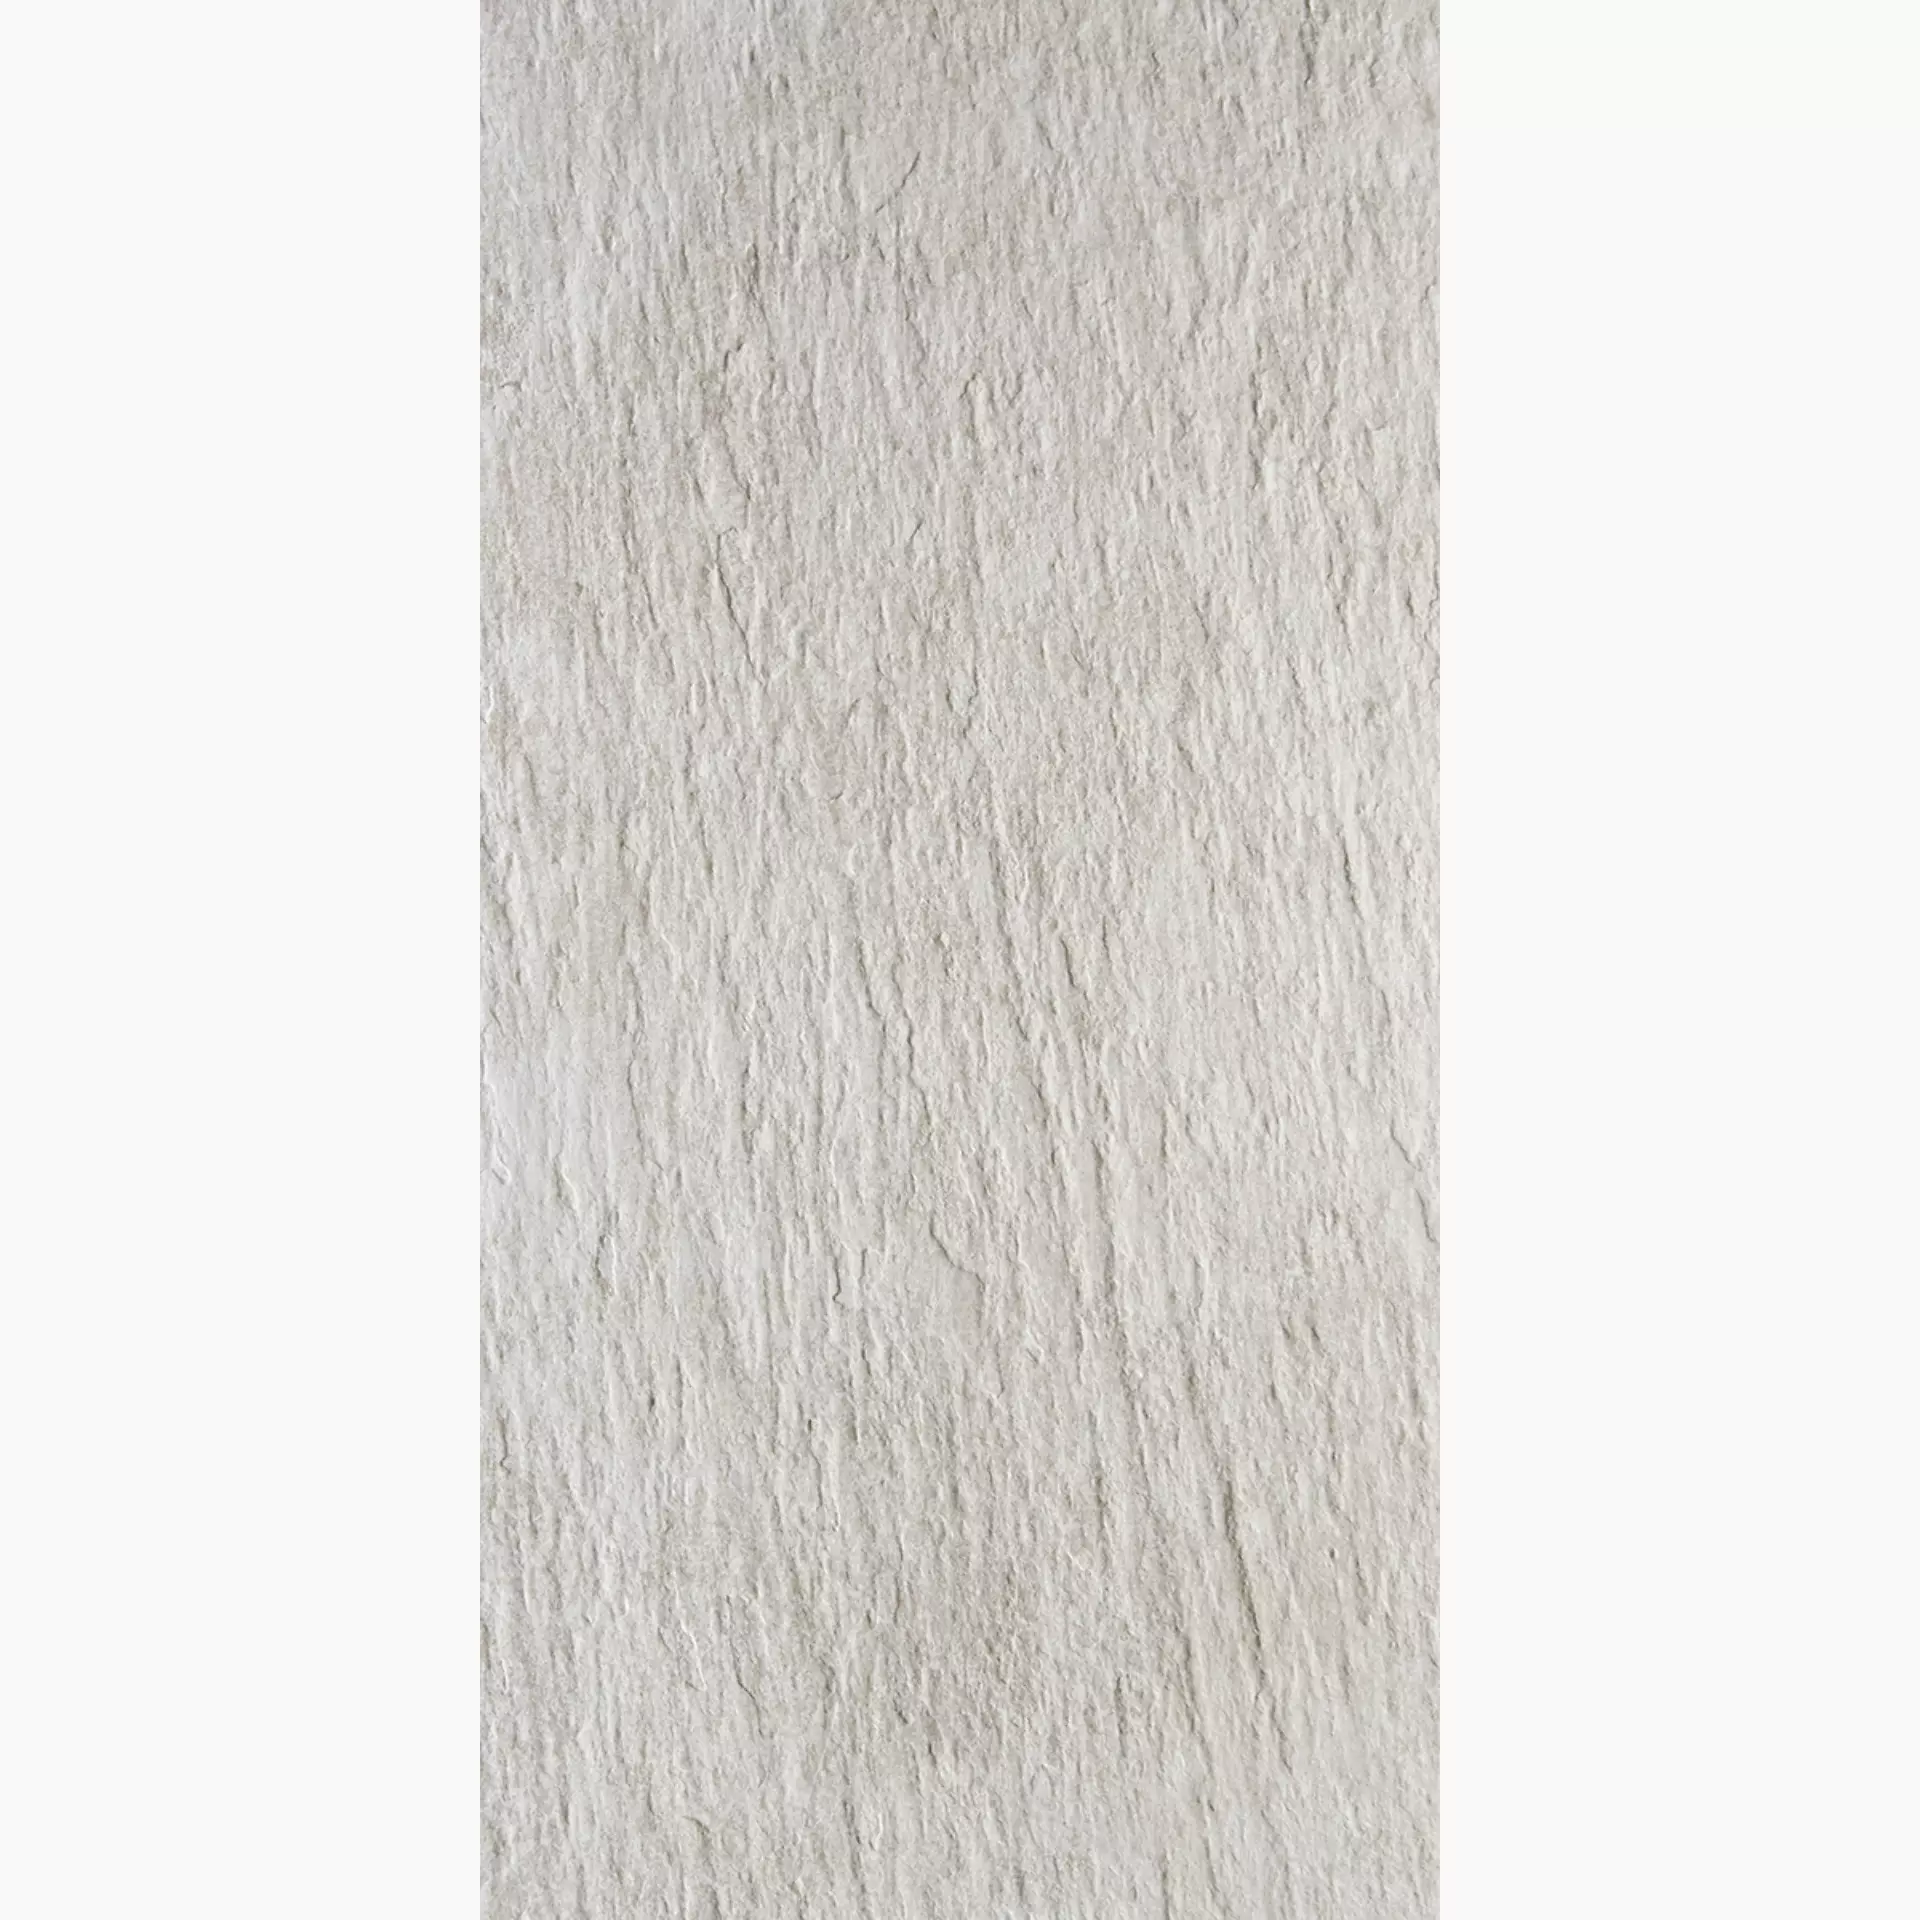 Rondine Ardesie White Strong J87134 30,5x60,5cm 9,5mm